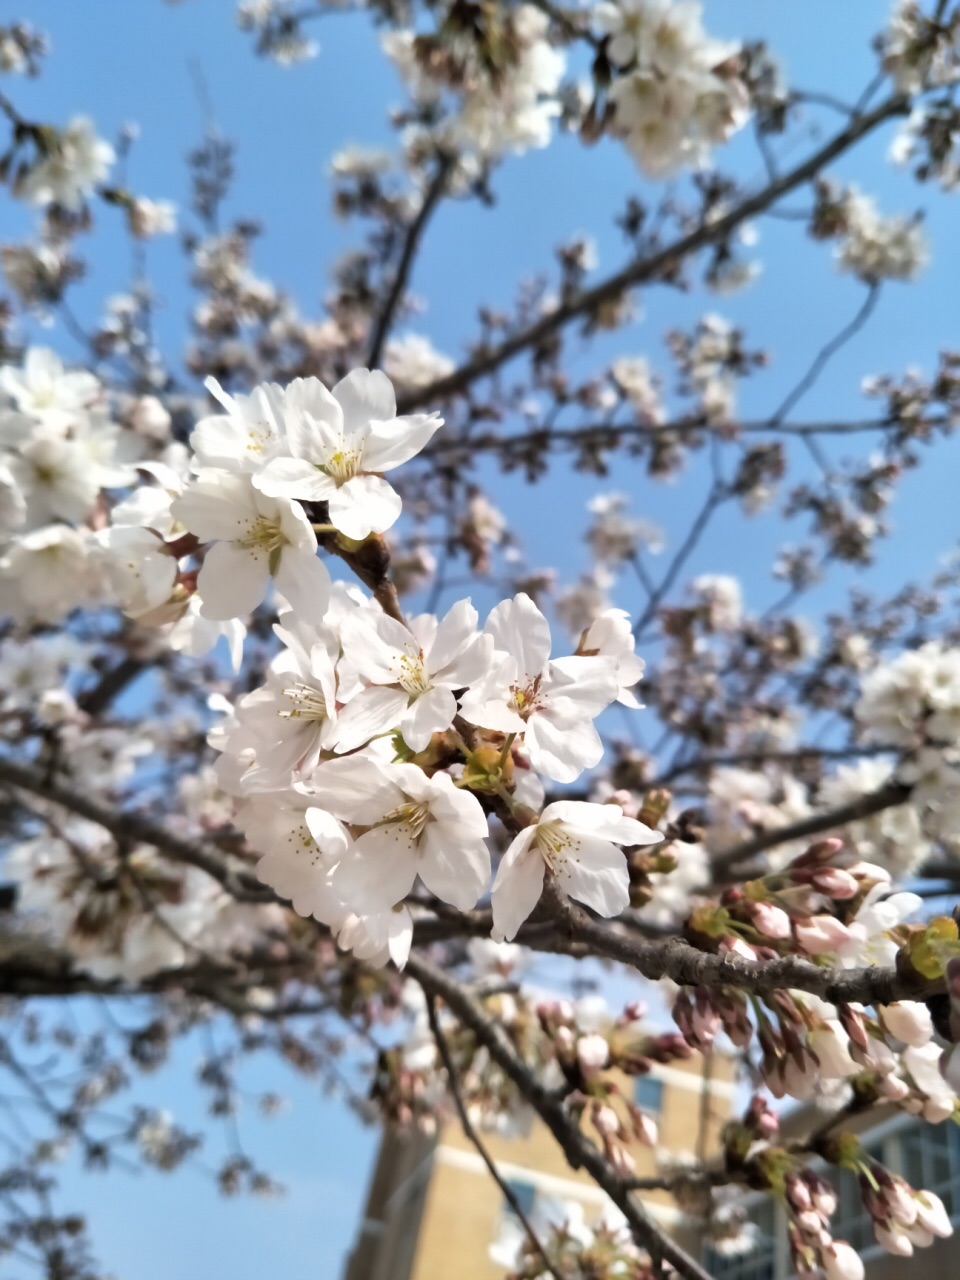 4月份的韩国 樱花特别漂亮